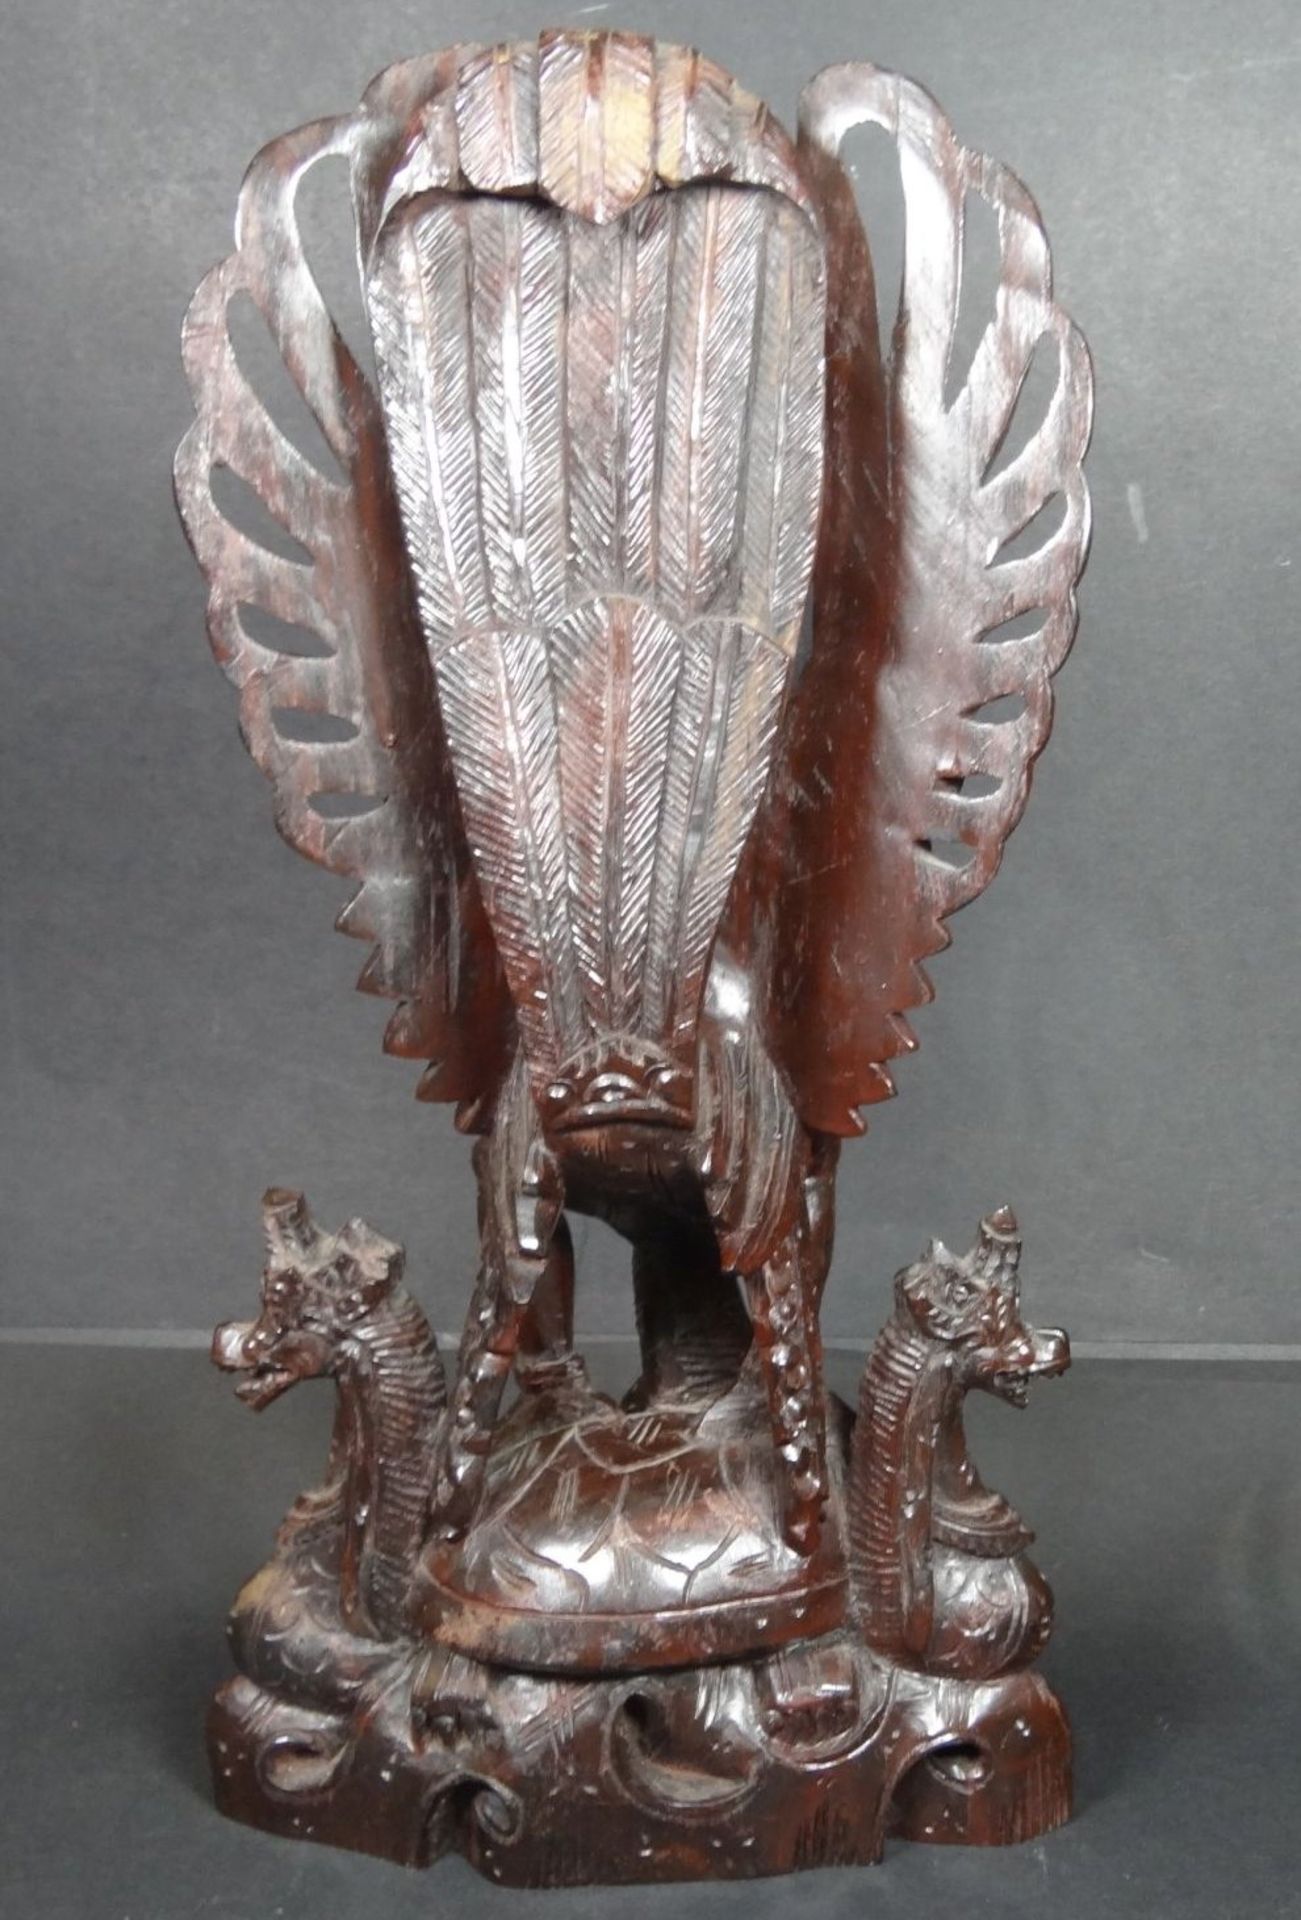 Holzschnitzerei, indon. Gottheit "Garuda" mit Drachenköpfen, H-32 cm, B-16 cm, ält - Bild 6 aus 7